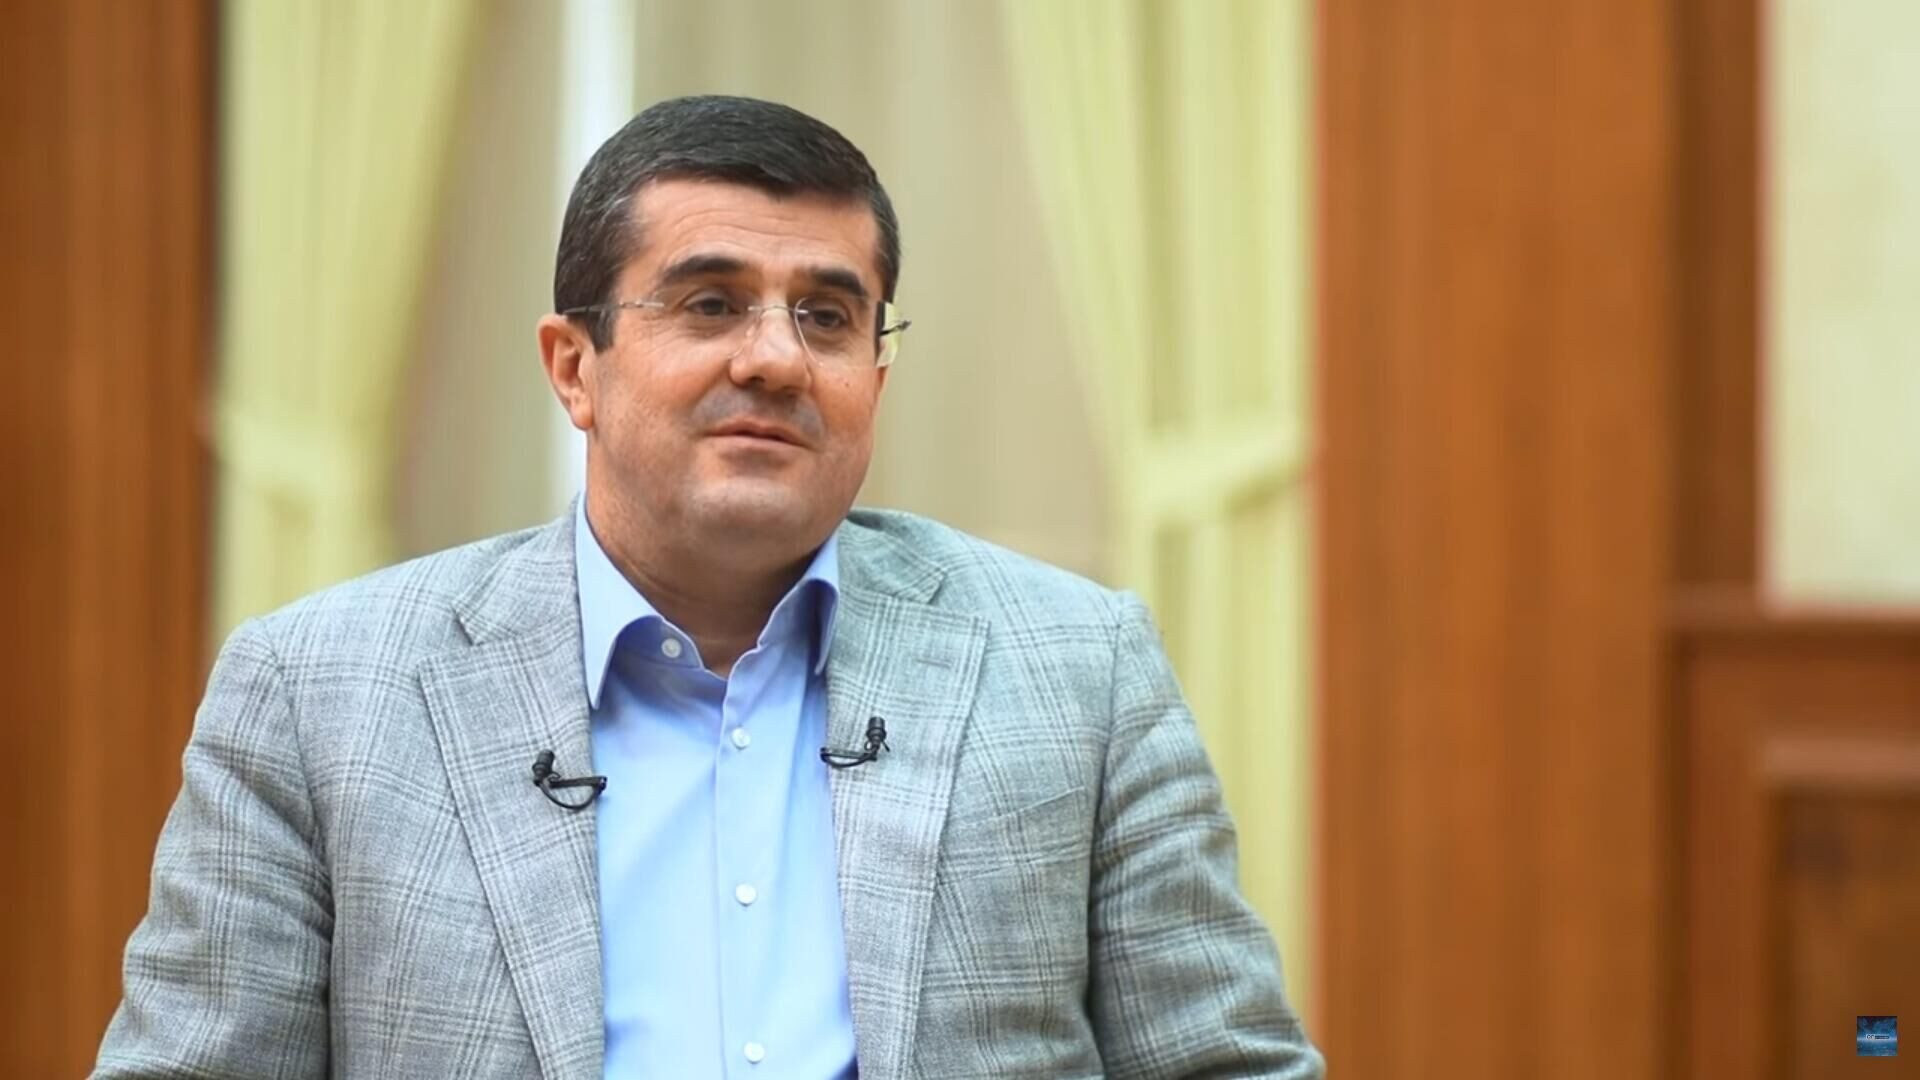 Араик Арутюнян: Завтра я представлю народу и парламенту Арцаха заявление об отставке с поста президента